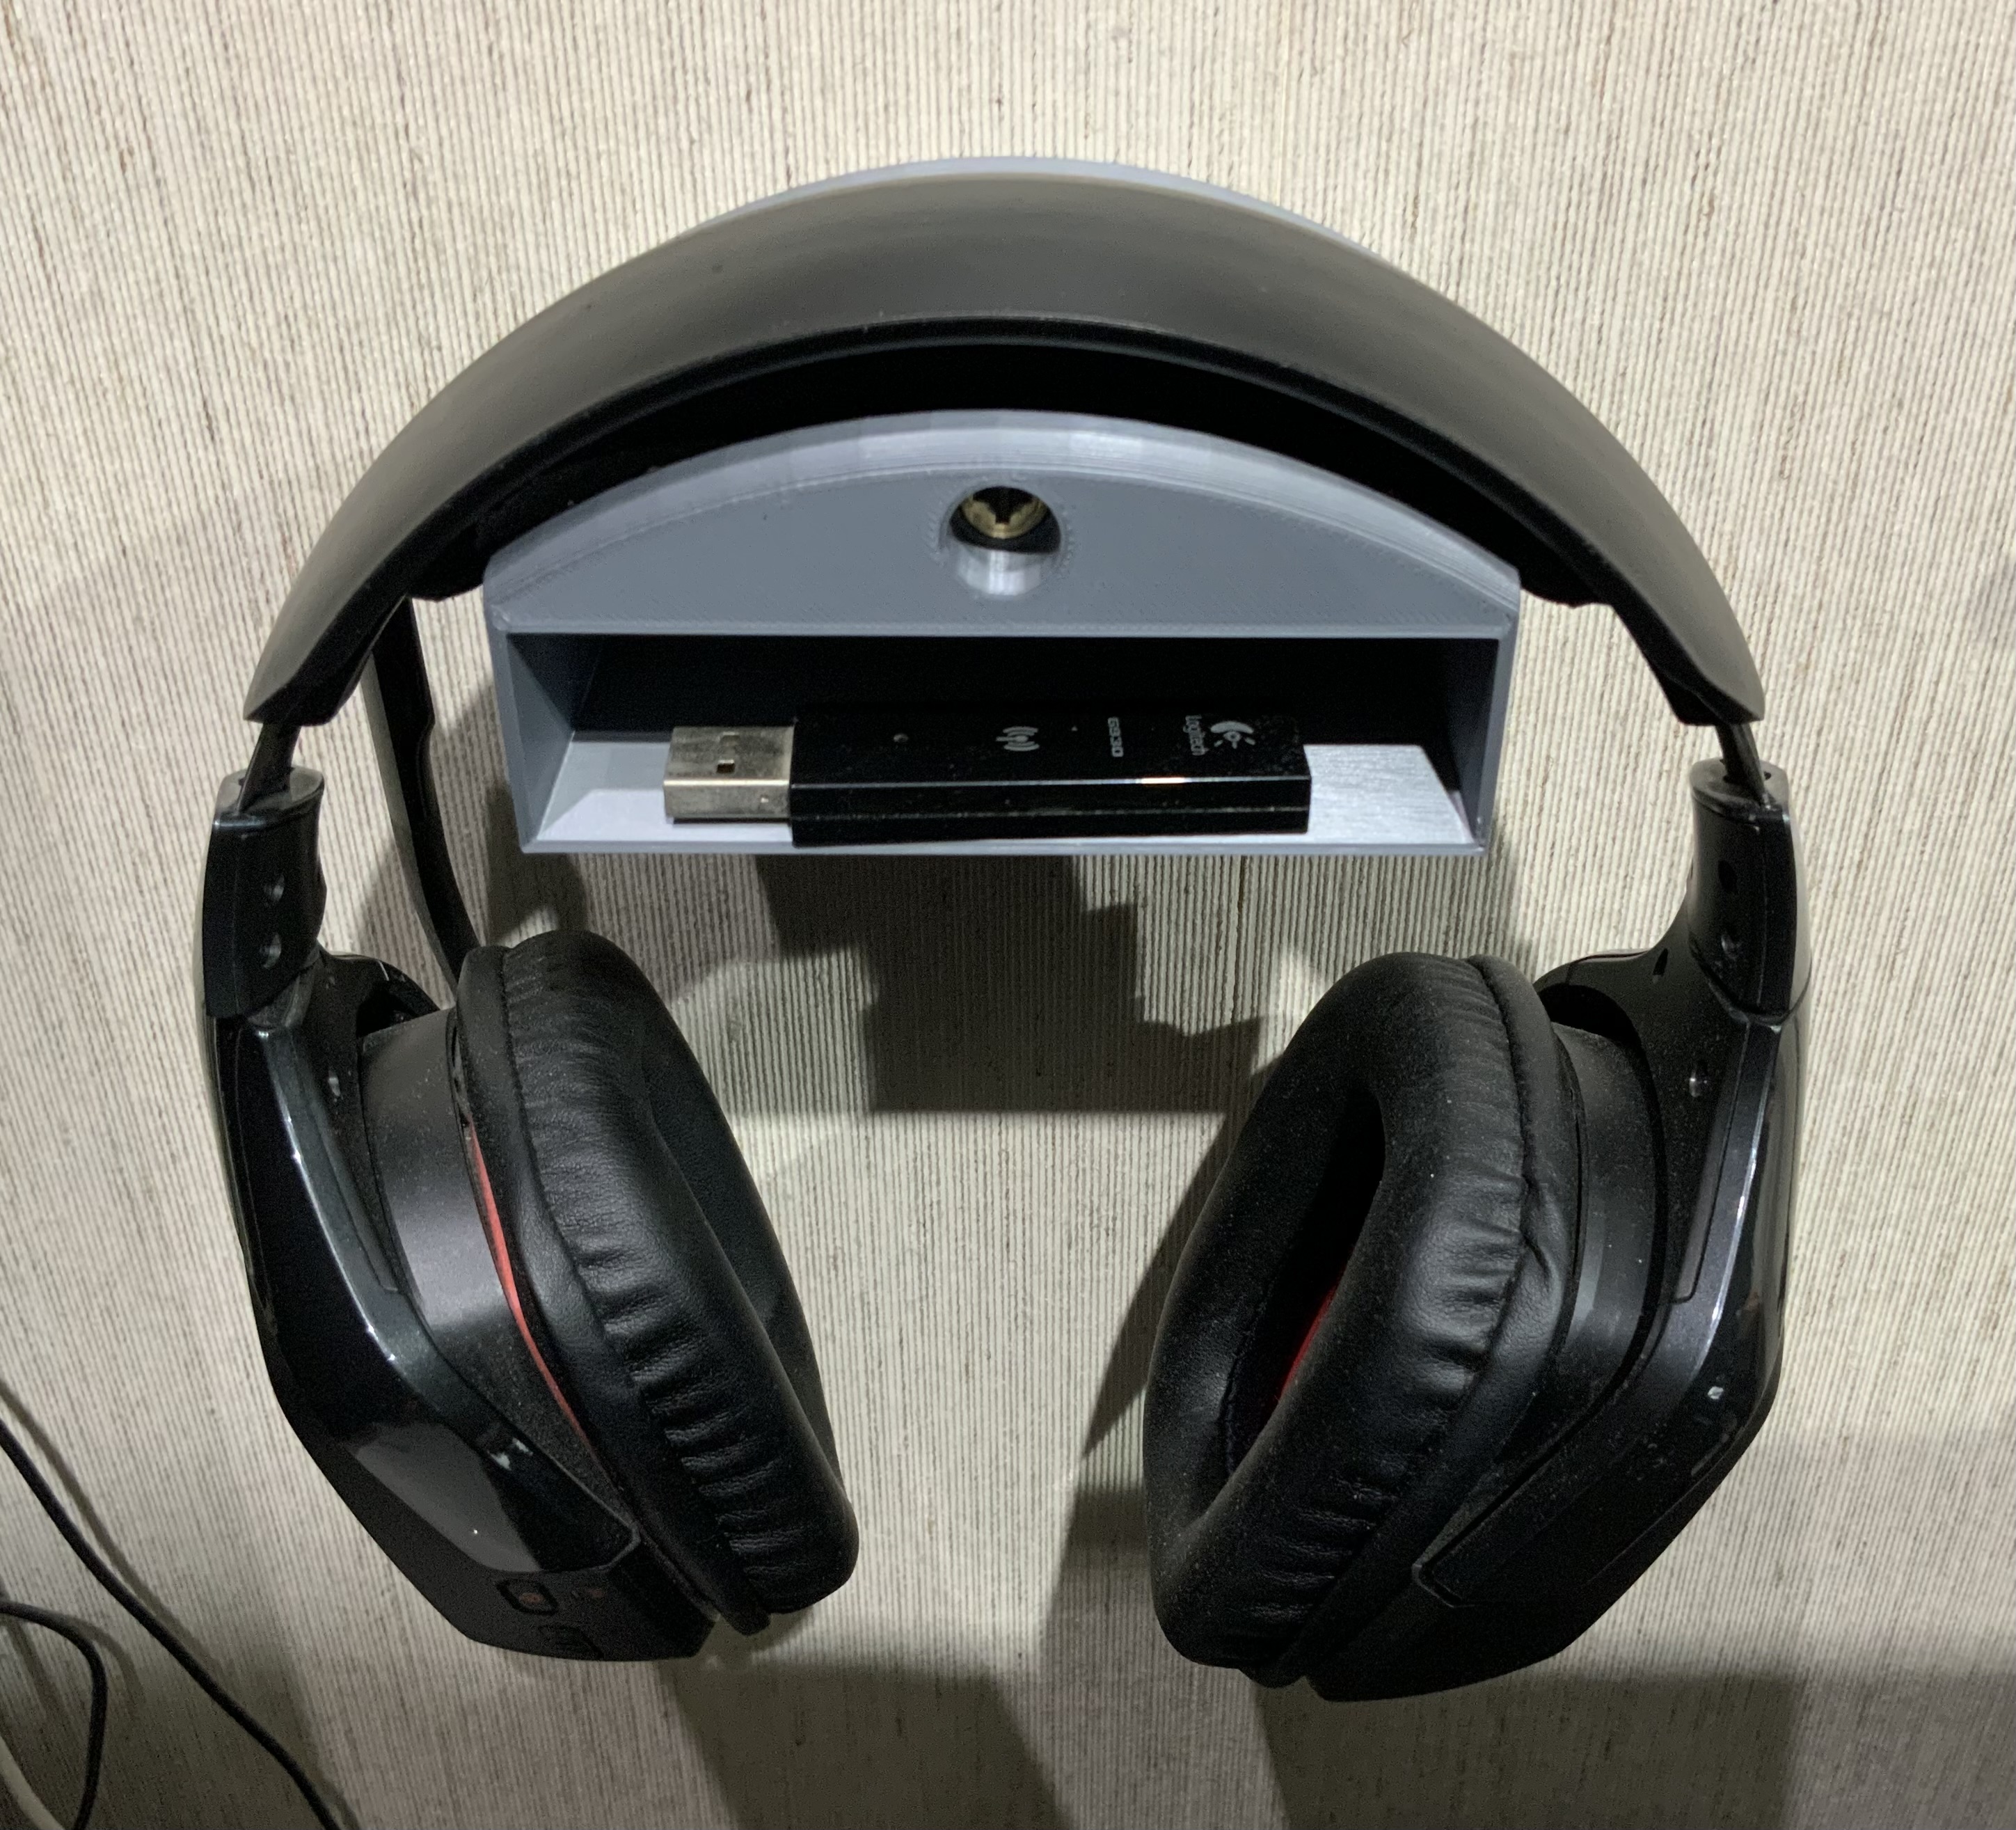 Kopfhörerhalter mit Ablage für USB-Sender / Headphone Holder